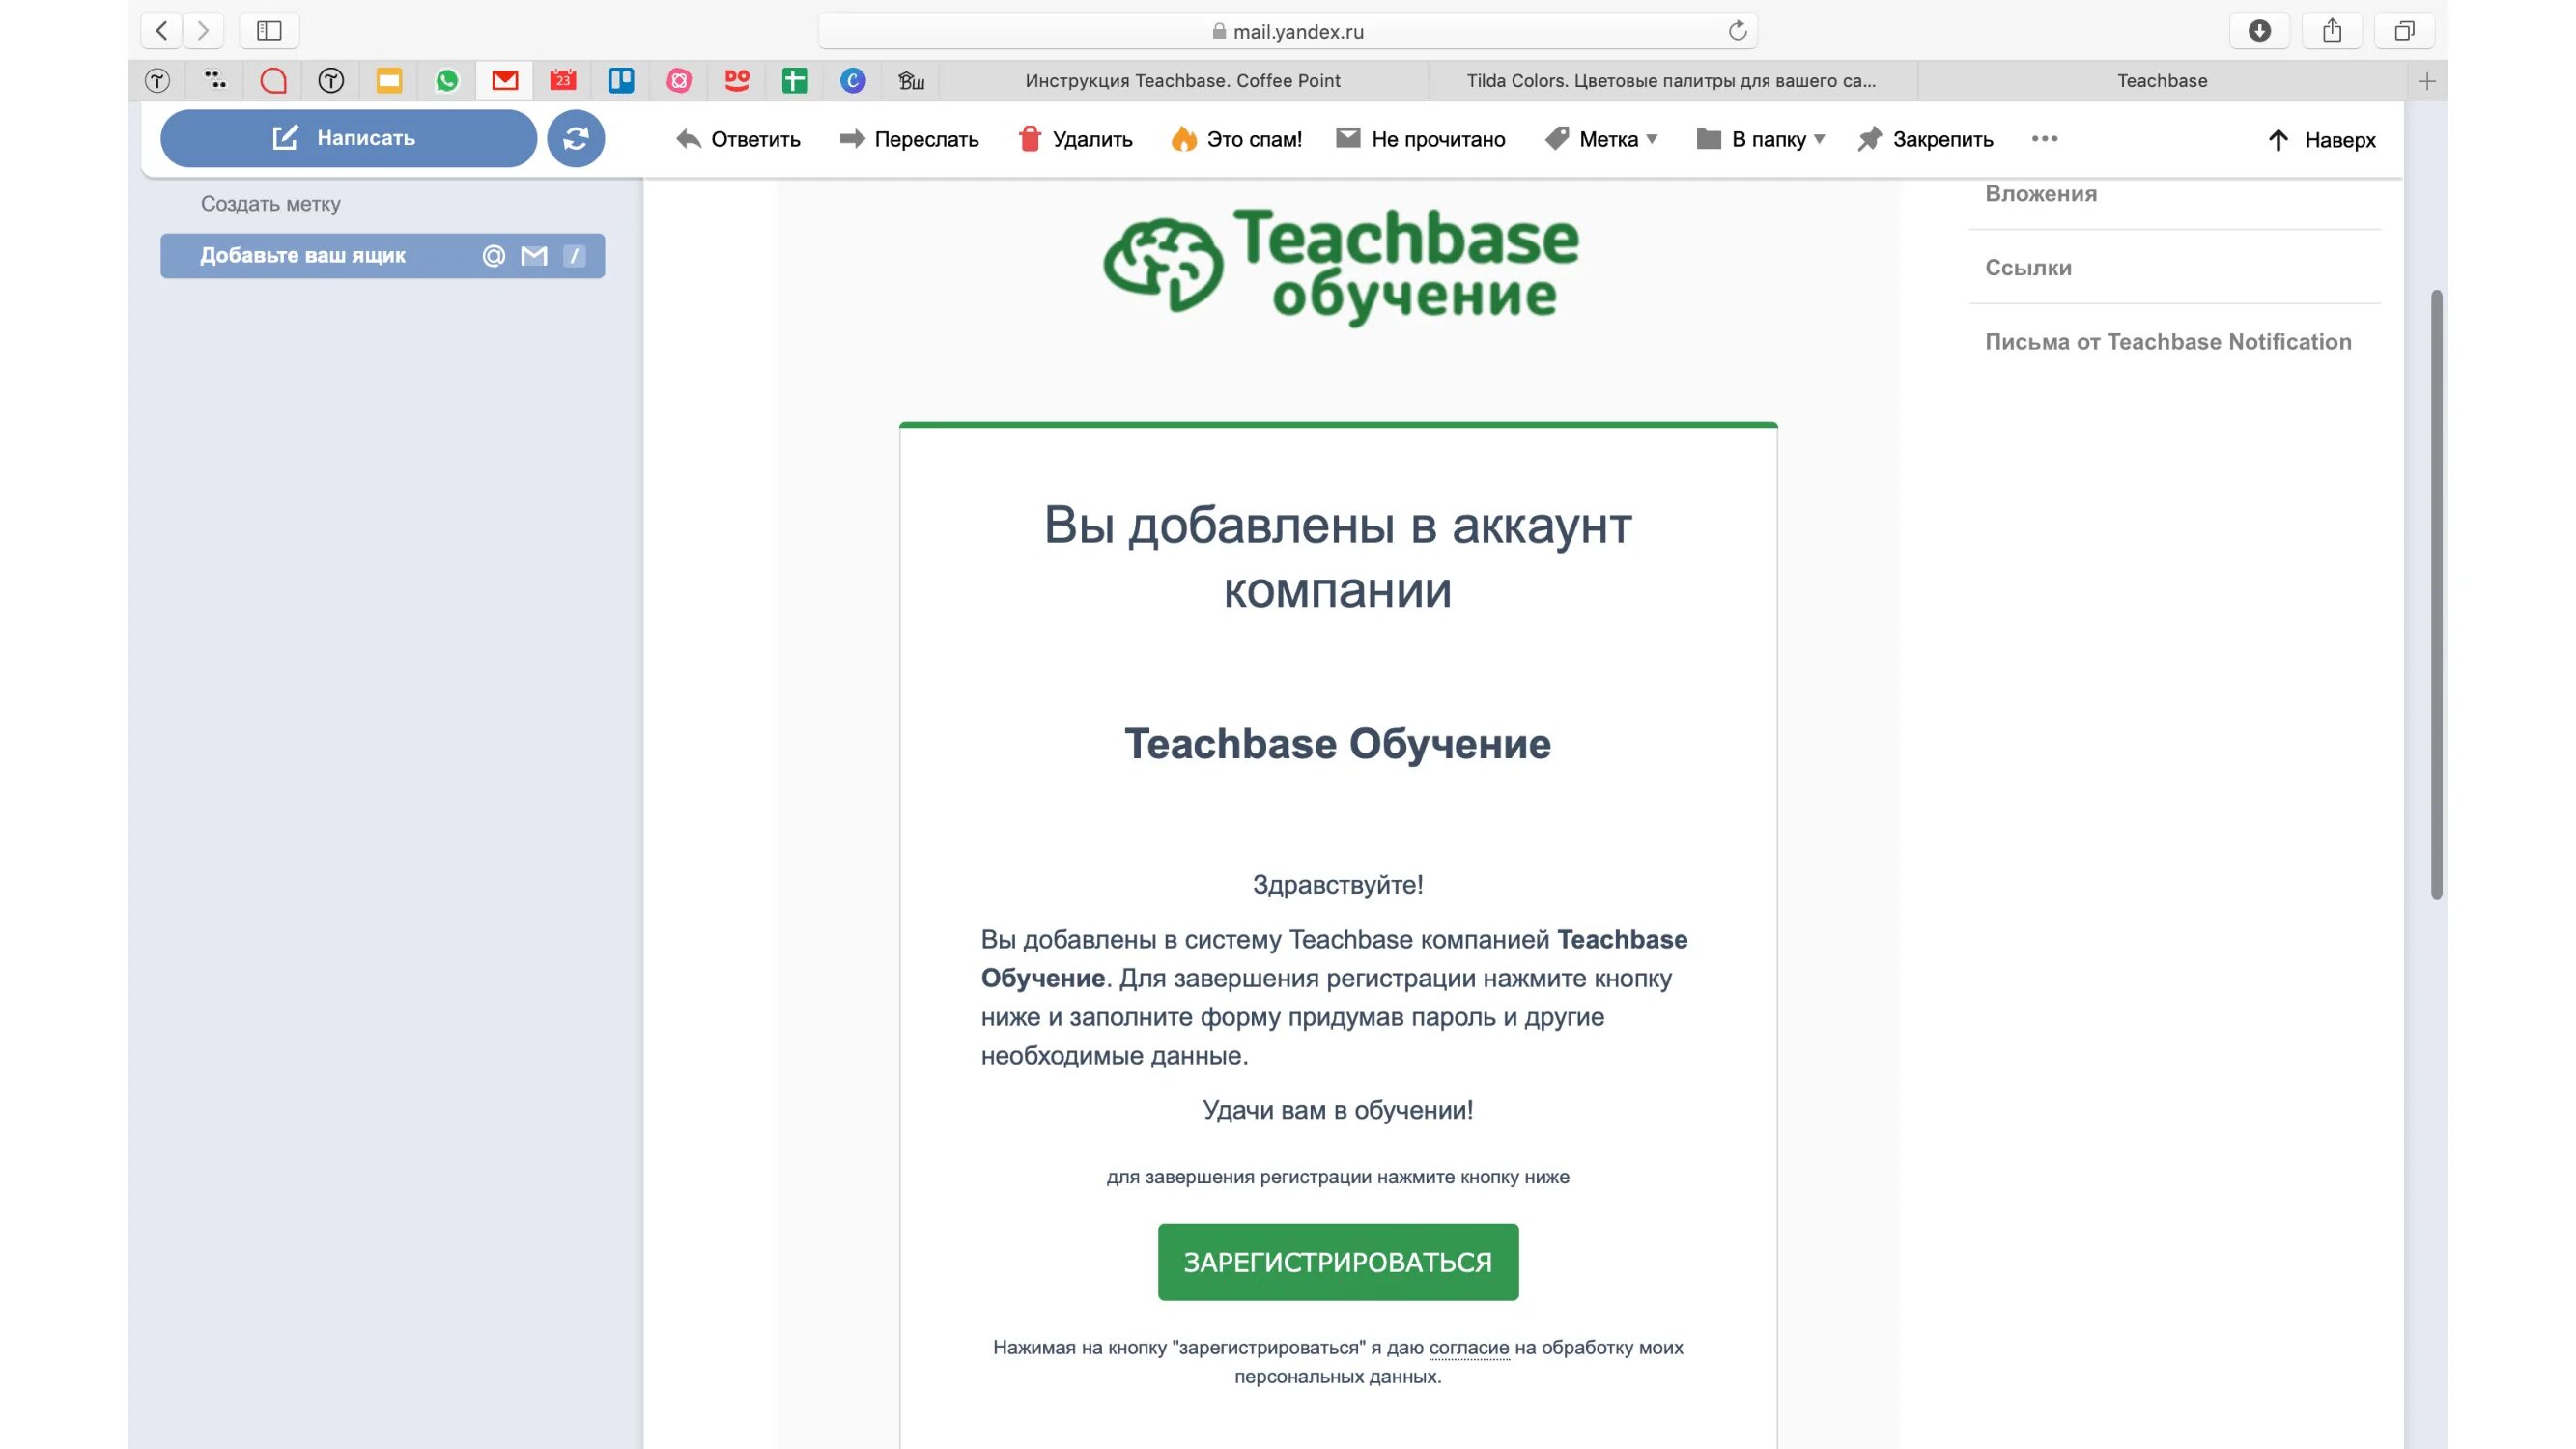 Go teachbase ru для сфр. Teachbase ответы на тесты. Зарегистрироваться на Teachbase. Teachbase письма. Правильные ответы на тестирования Teachbase.